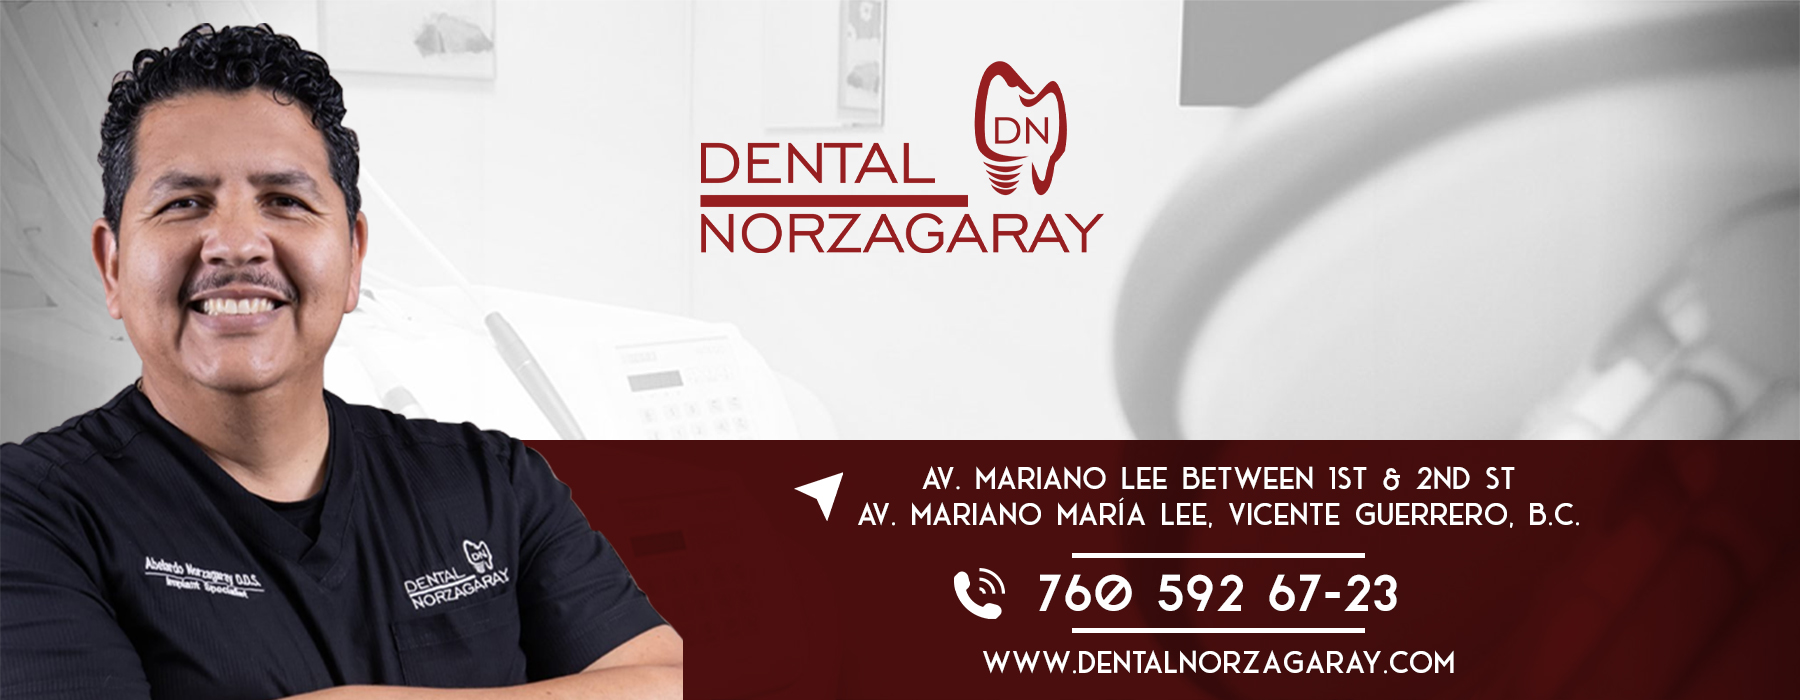  Dental Norzagaray